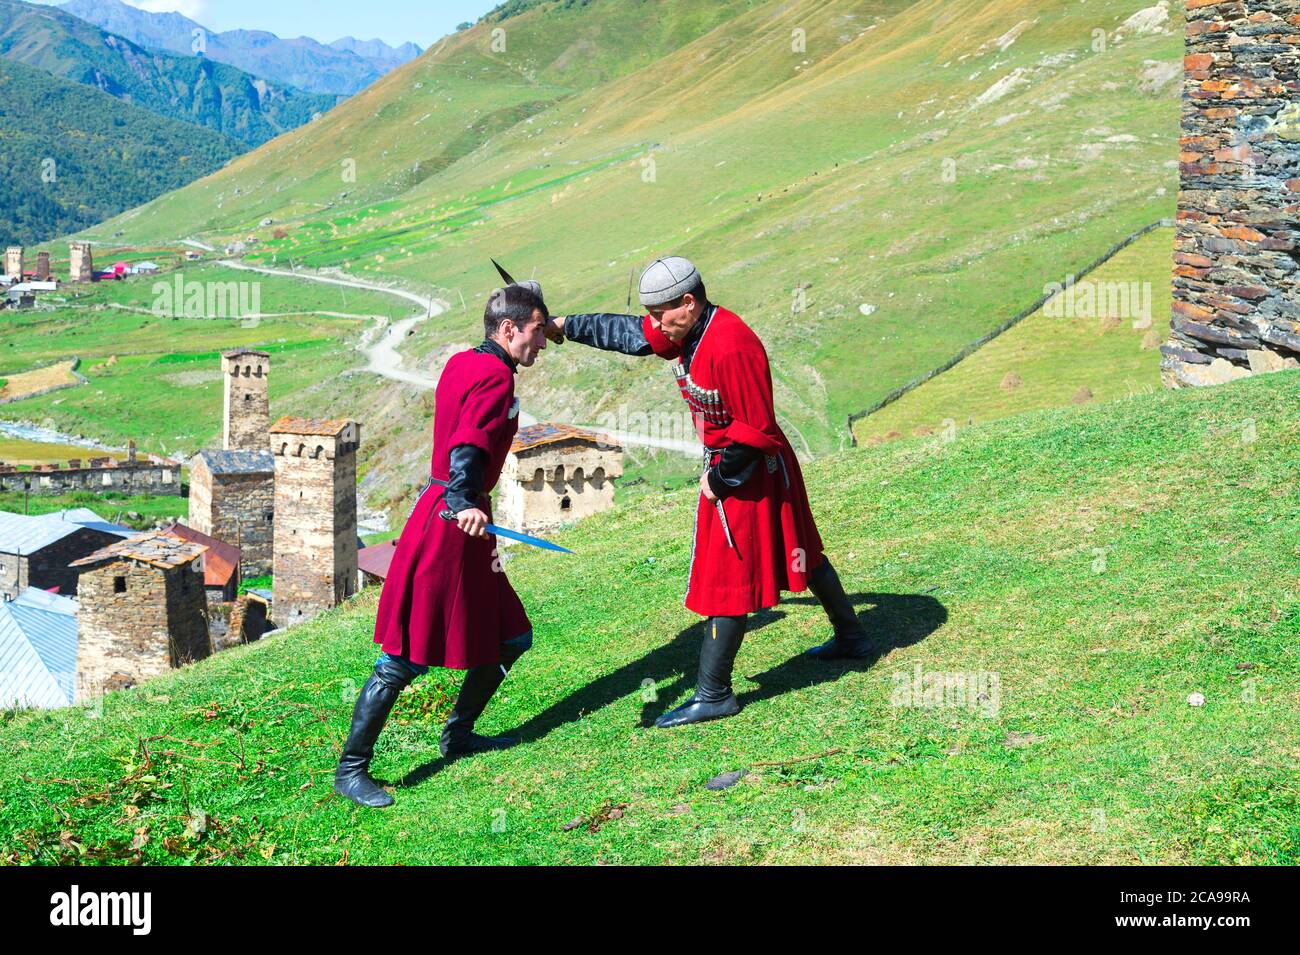 Il pugnale di spettacolo di combattimento da due uomini georgiano di un gruppo folcloristico, Ushguli, regione di Svaneti, Georgia Foto Stock